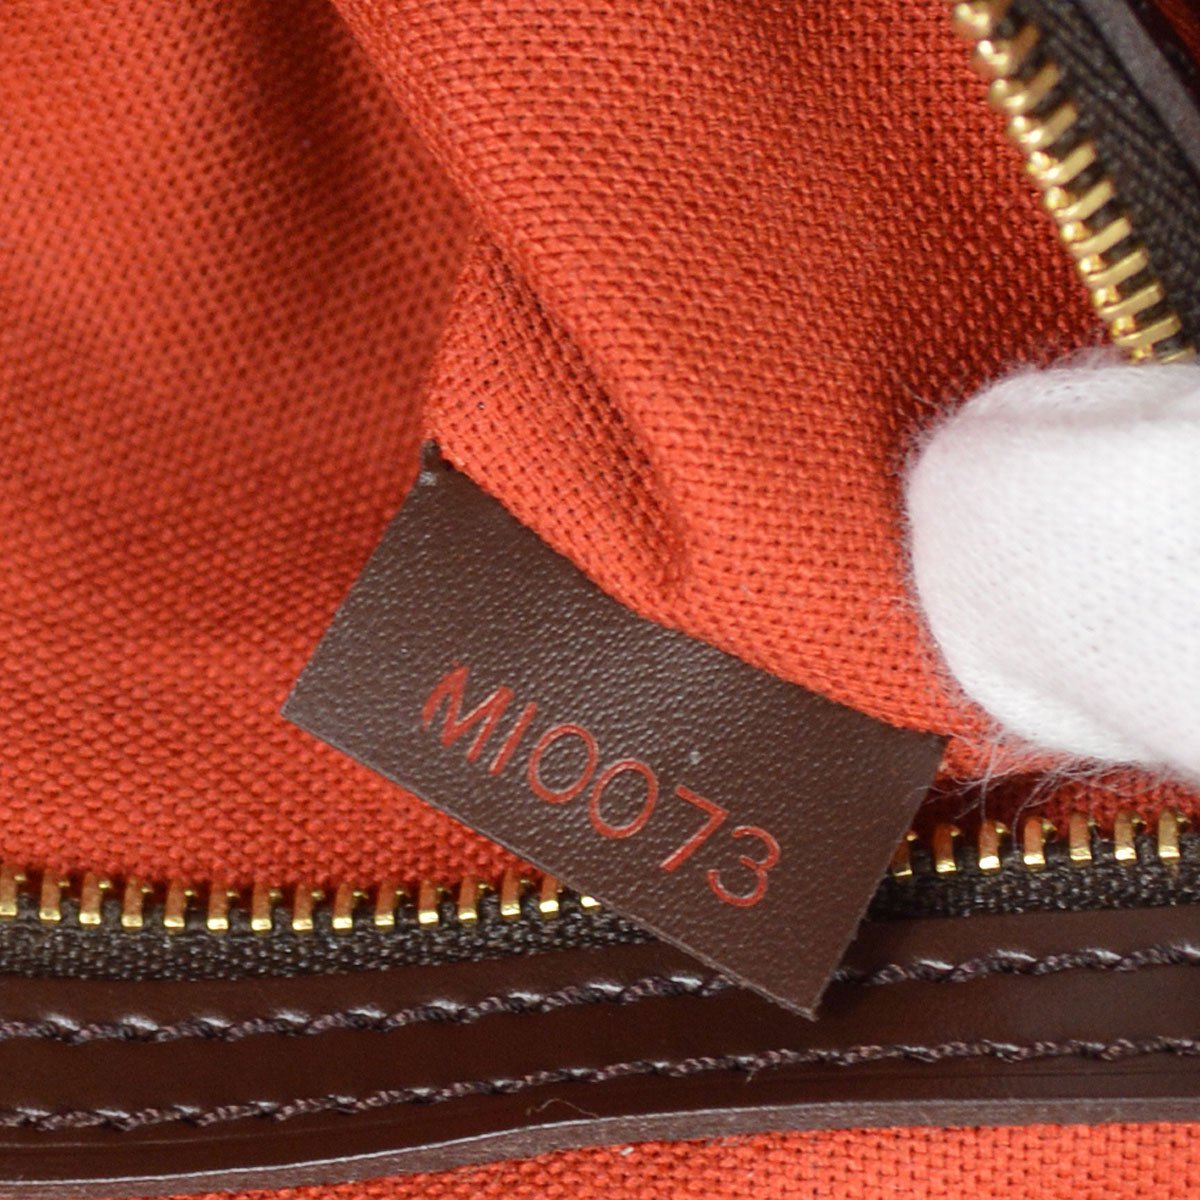 Louis Vuitton Mini Looping Hand Bag Damier Canvas Ebene N51158 Mi0073